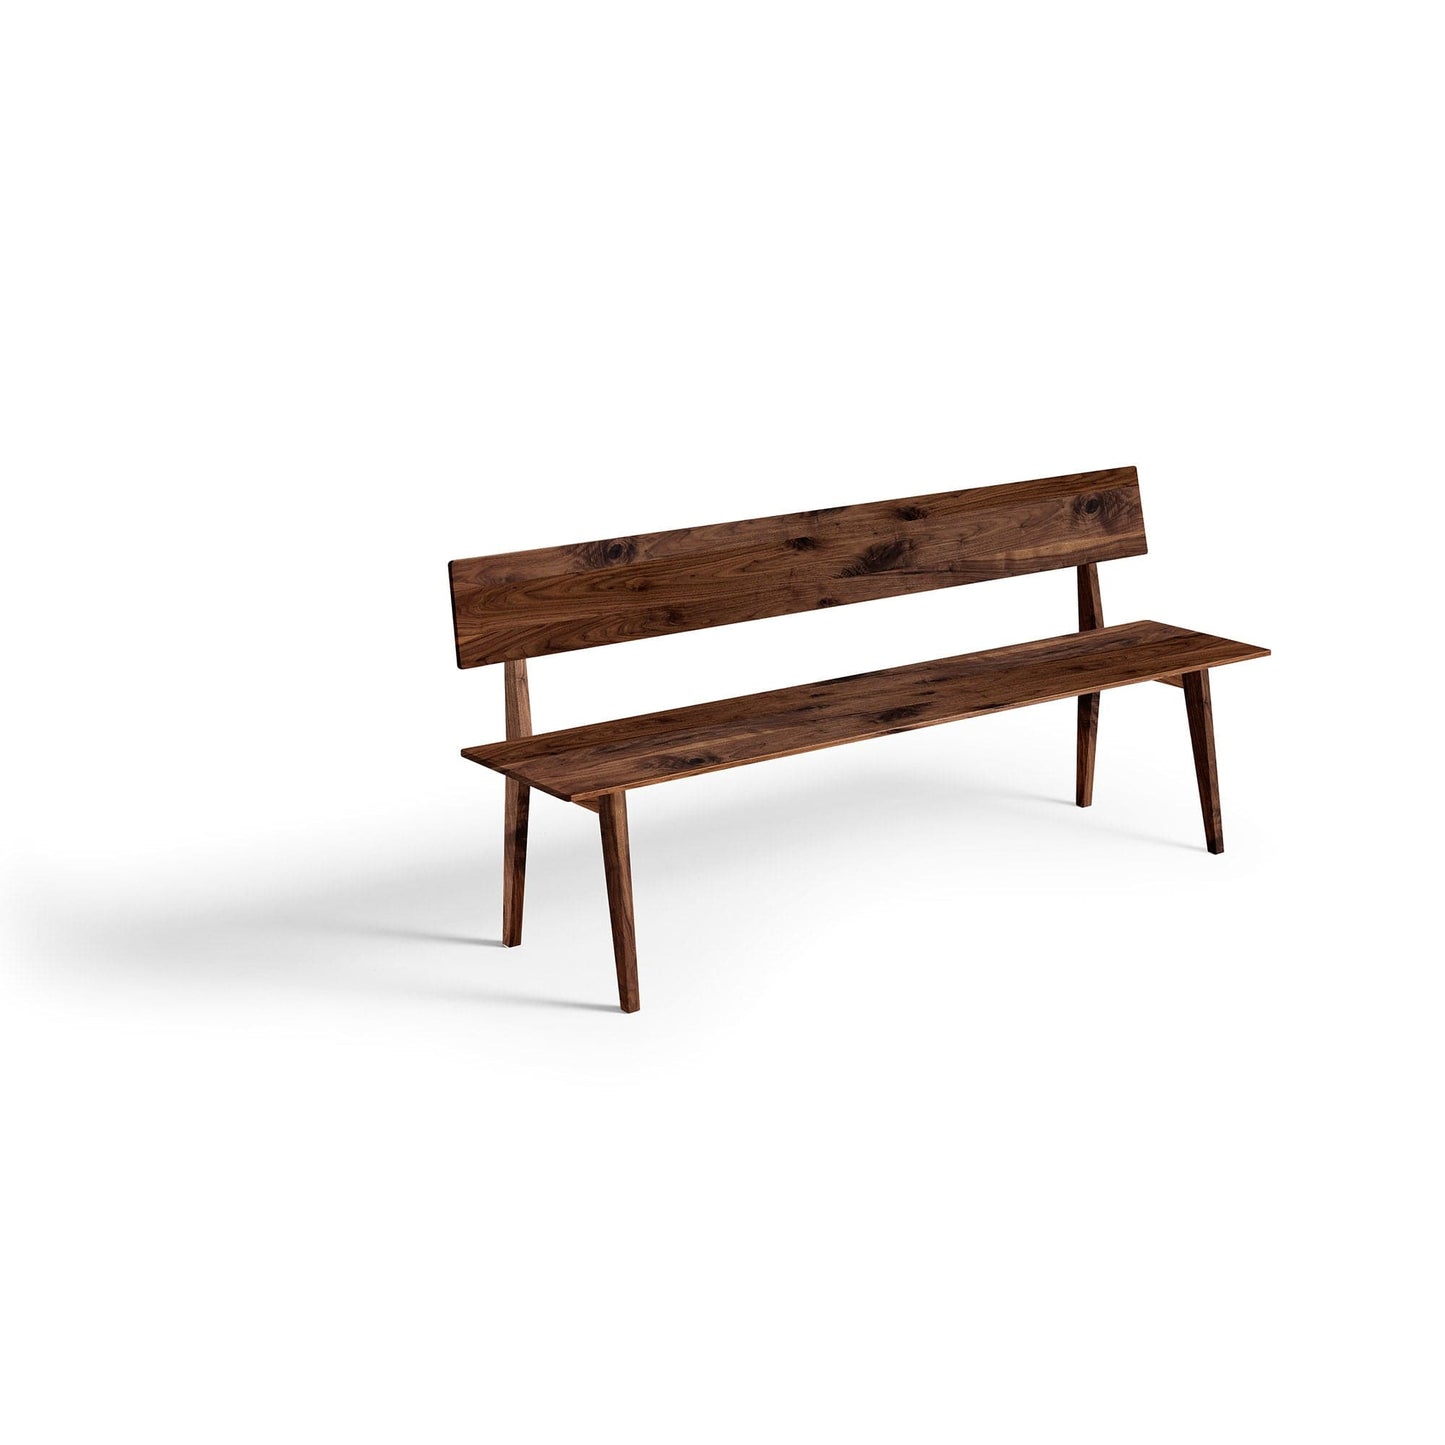 Leichte Bank aus Massivholz in modernem Design, ebenfalls aus unserer Manufaktur für hochwertige Möbel in höchster Qualität in Wildnuss